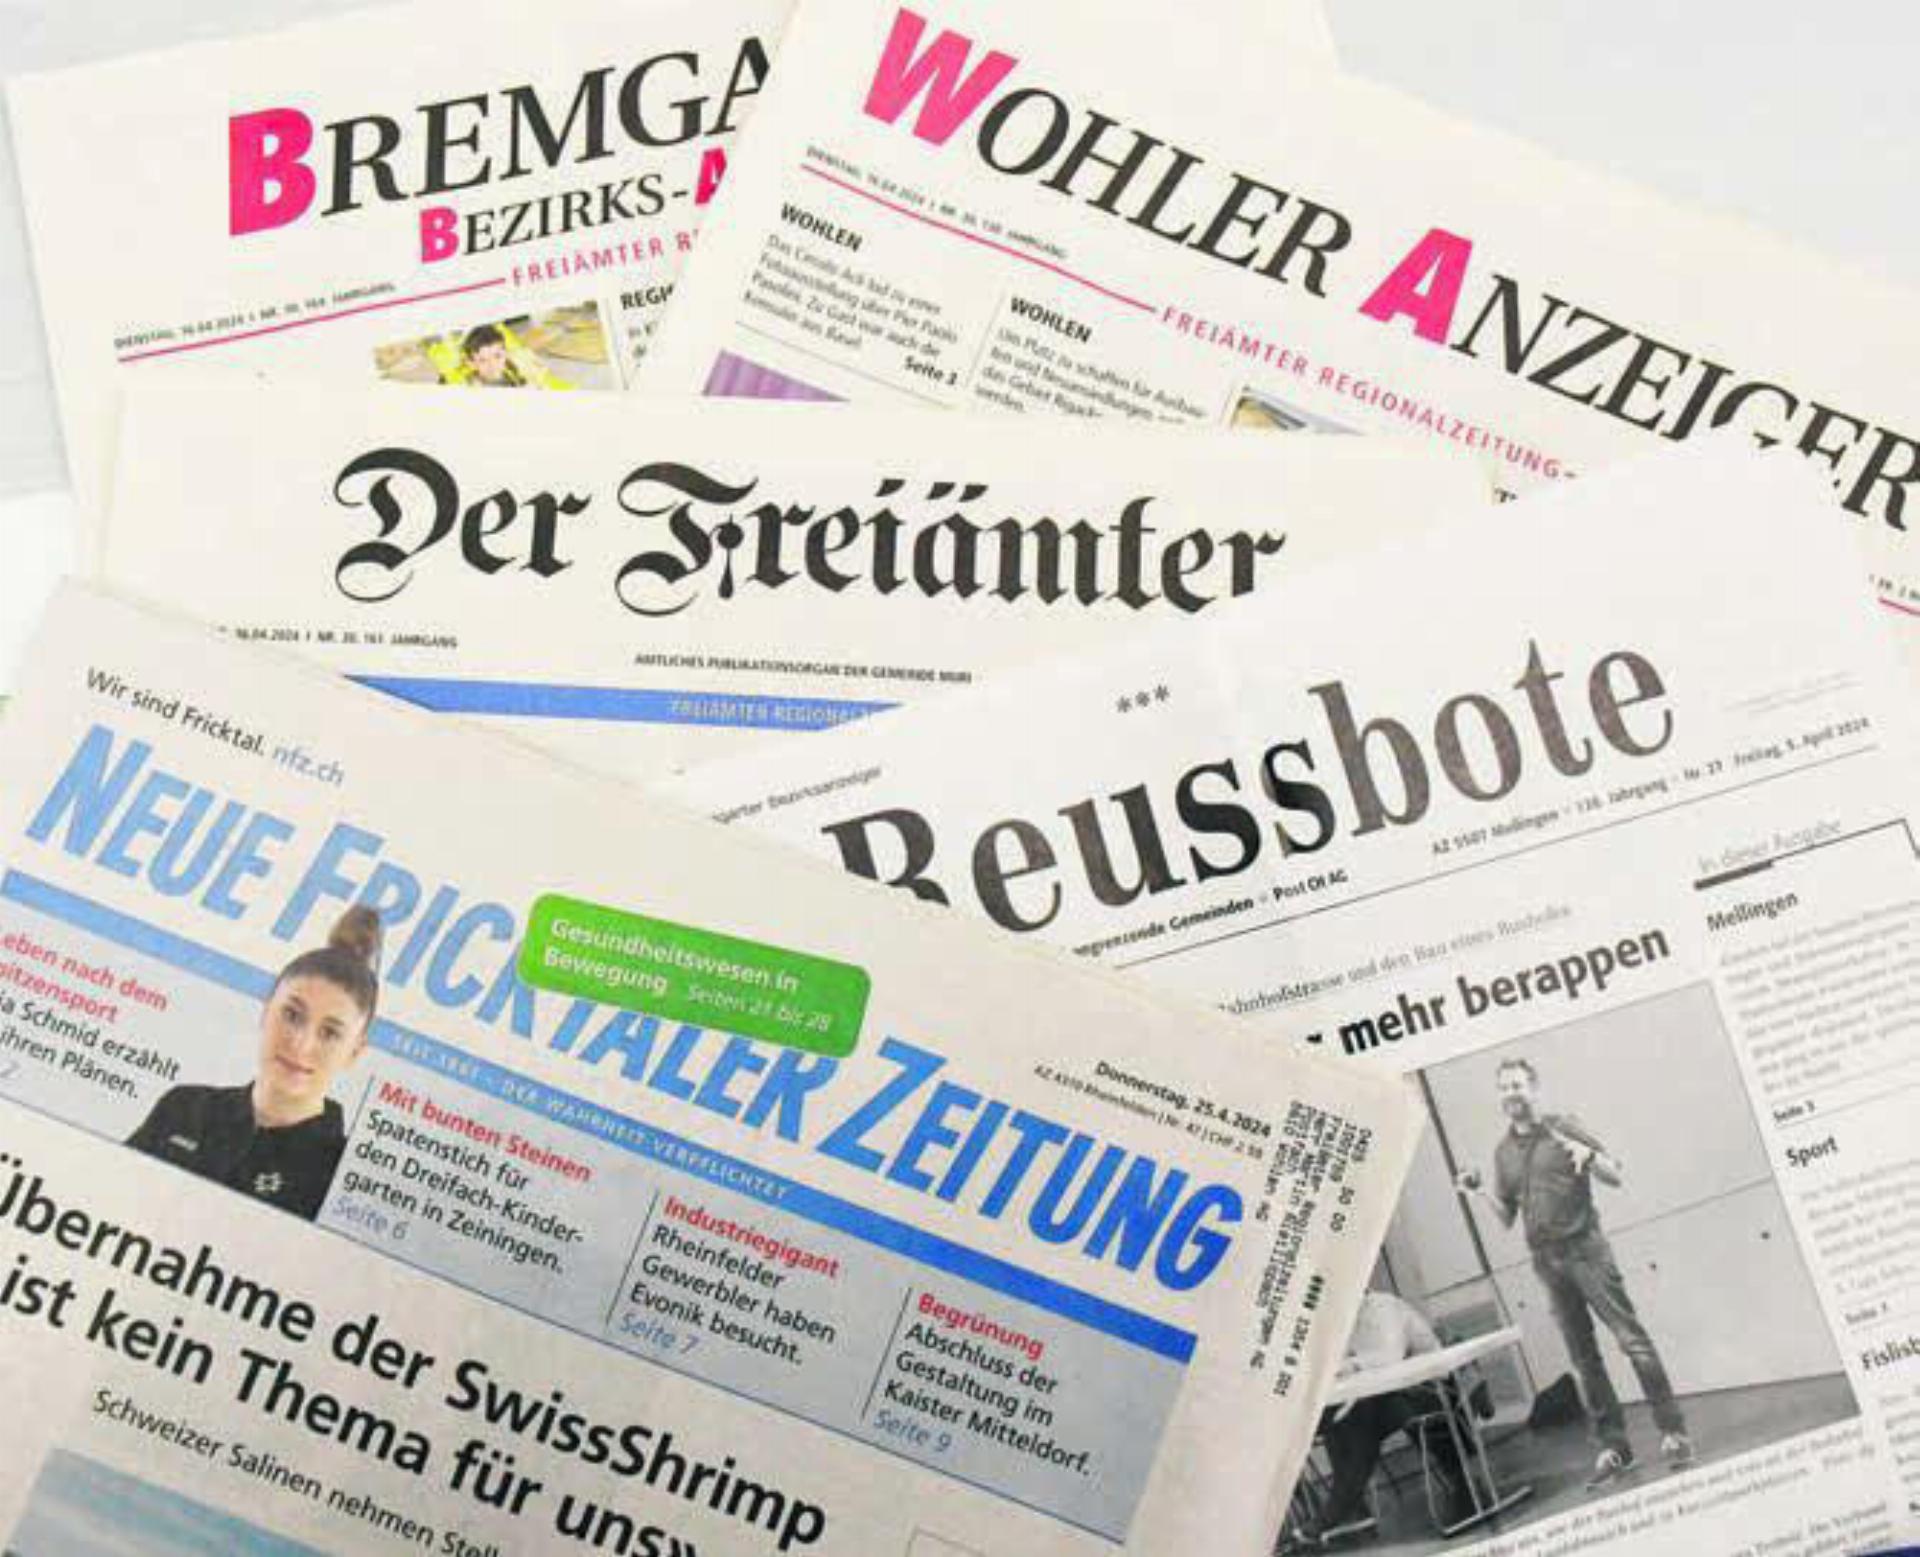 Die Verlage von diversen Zeitungstiteln im Aargau müssen weiterhin auf das neue Mediengesetz warten. Dazu zählen auch die Lokalzeitungen der Freiämter Regionalzeitungen AG «Bremgarter Bezirks-Anzeiger», «Der Freiämter» und «Wohler Anzeiger». Bild: